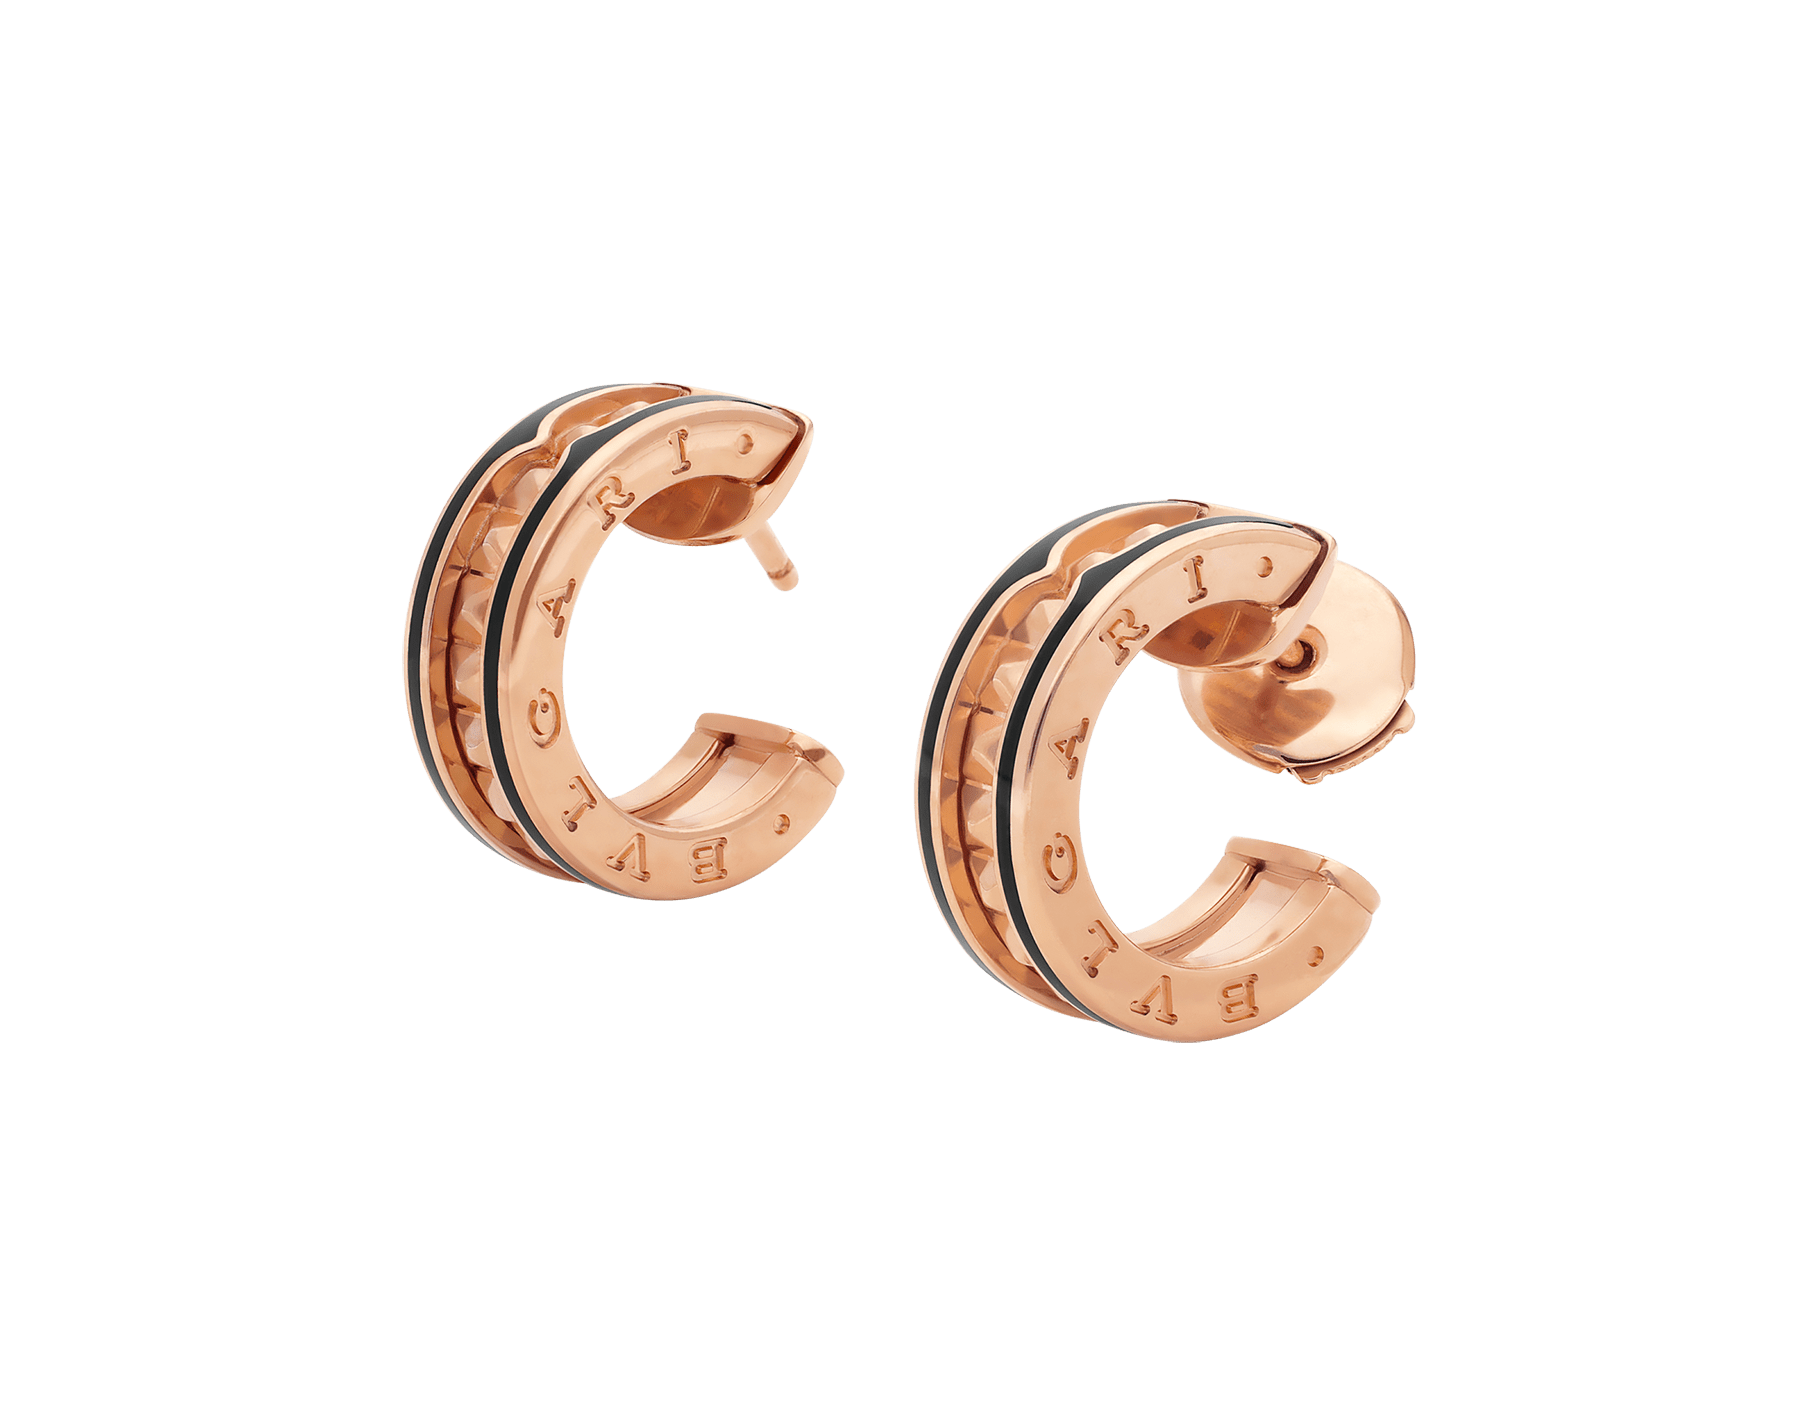 bvlgari ceramic earrings